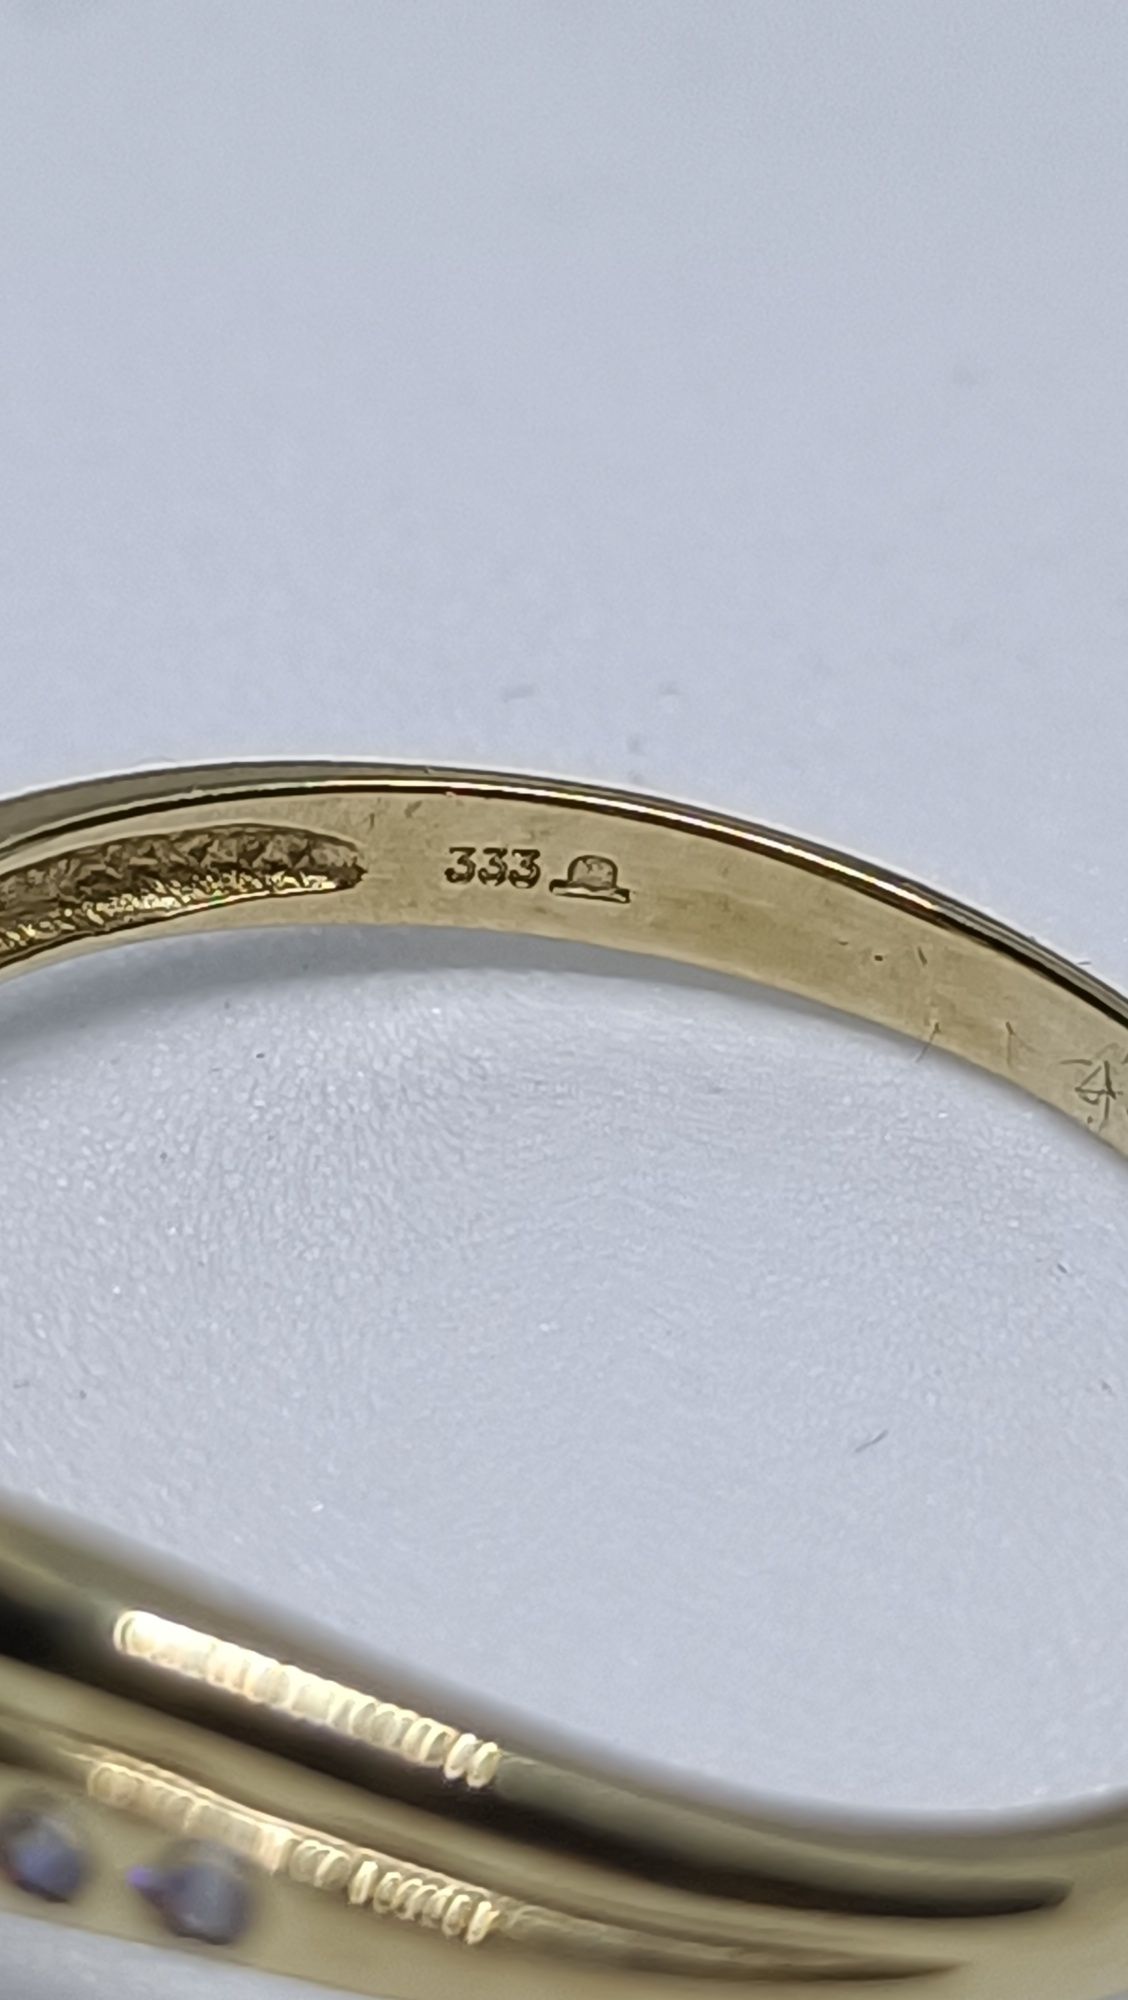 Wyjątkowy pierścionek z rubinem i szafirem ze złota, złoto pr. 333